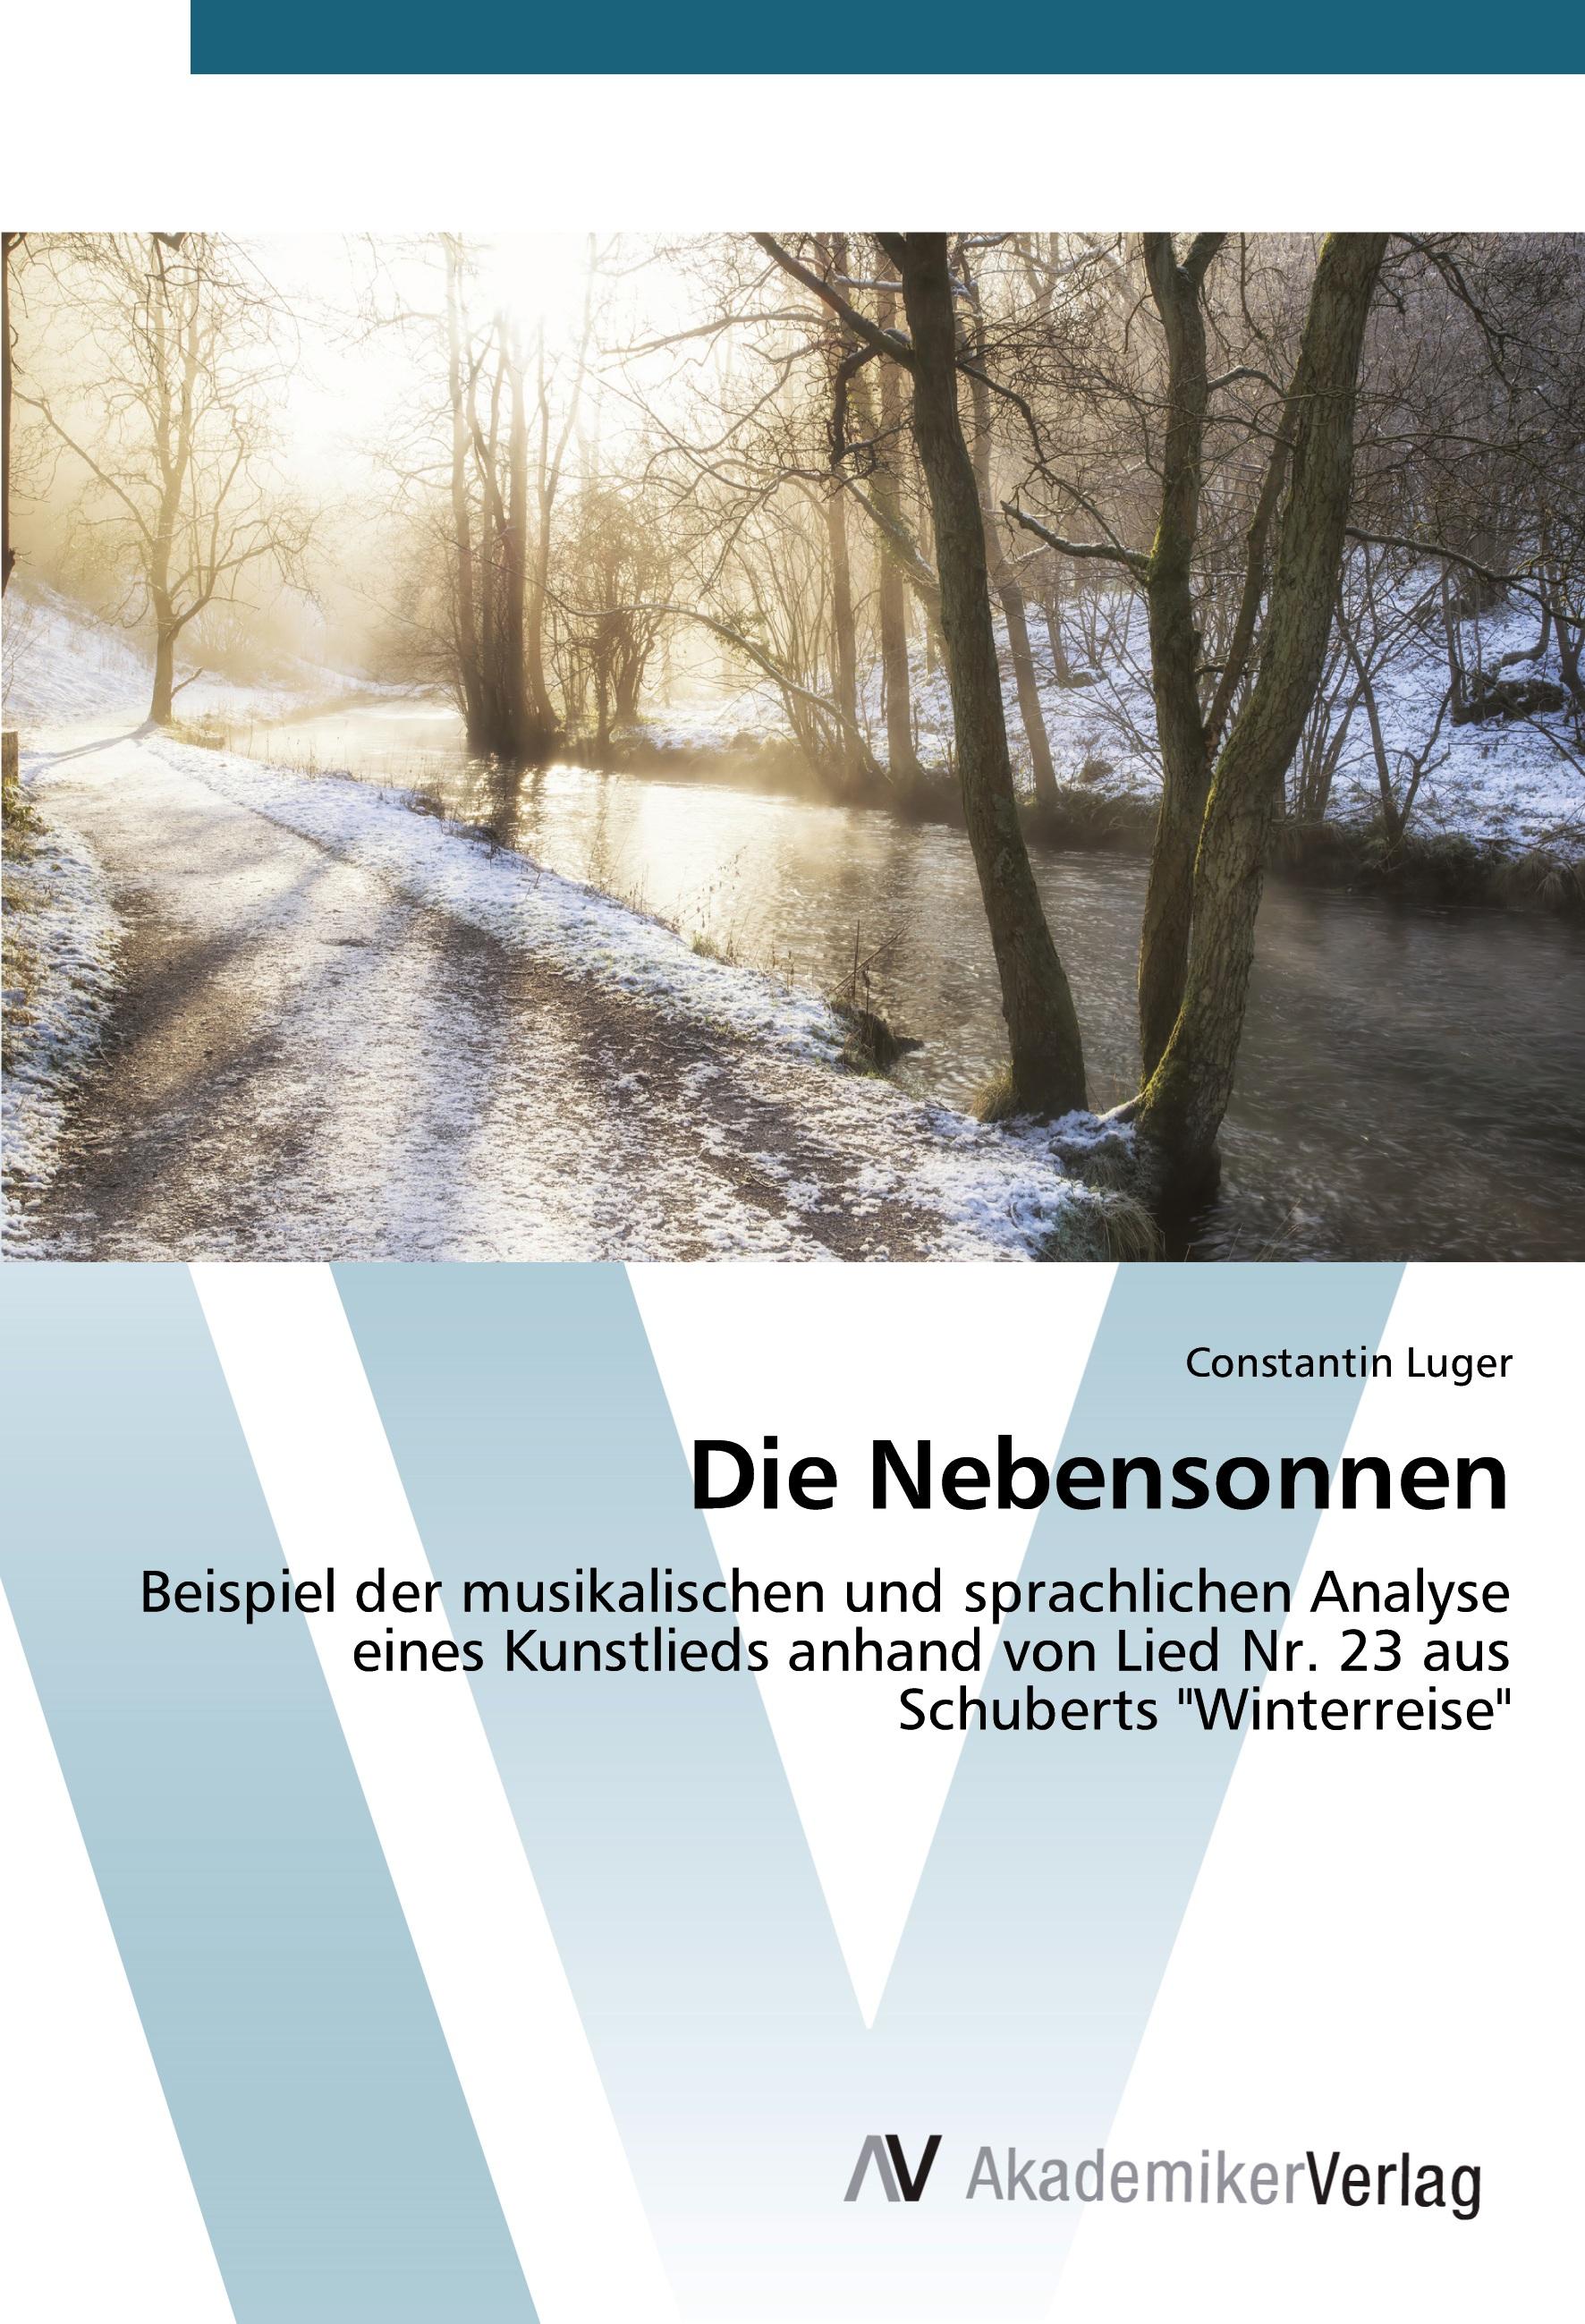 Die Nebensonnen | Beispiel der musikalischen und sprachlichen Analyse eines Kunstlieds anhand von Lied Nr. 23 aus Schuberts 